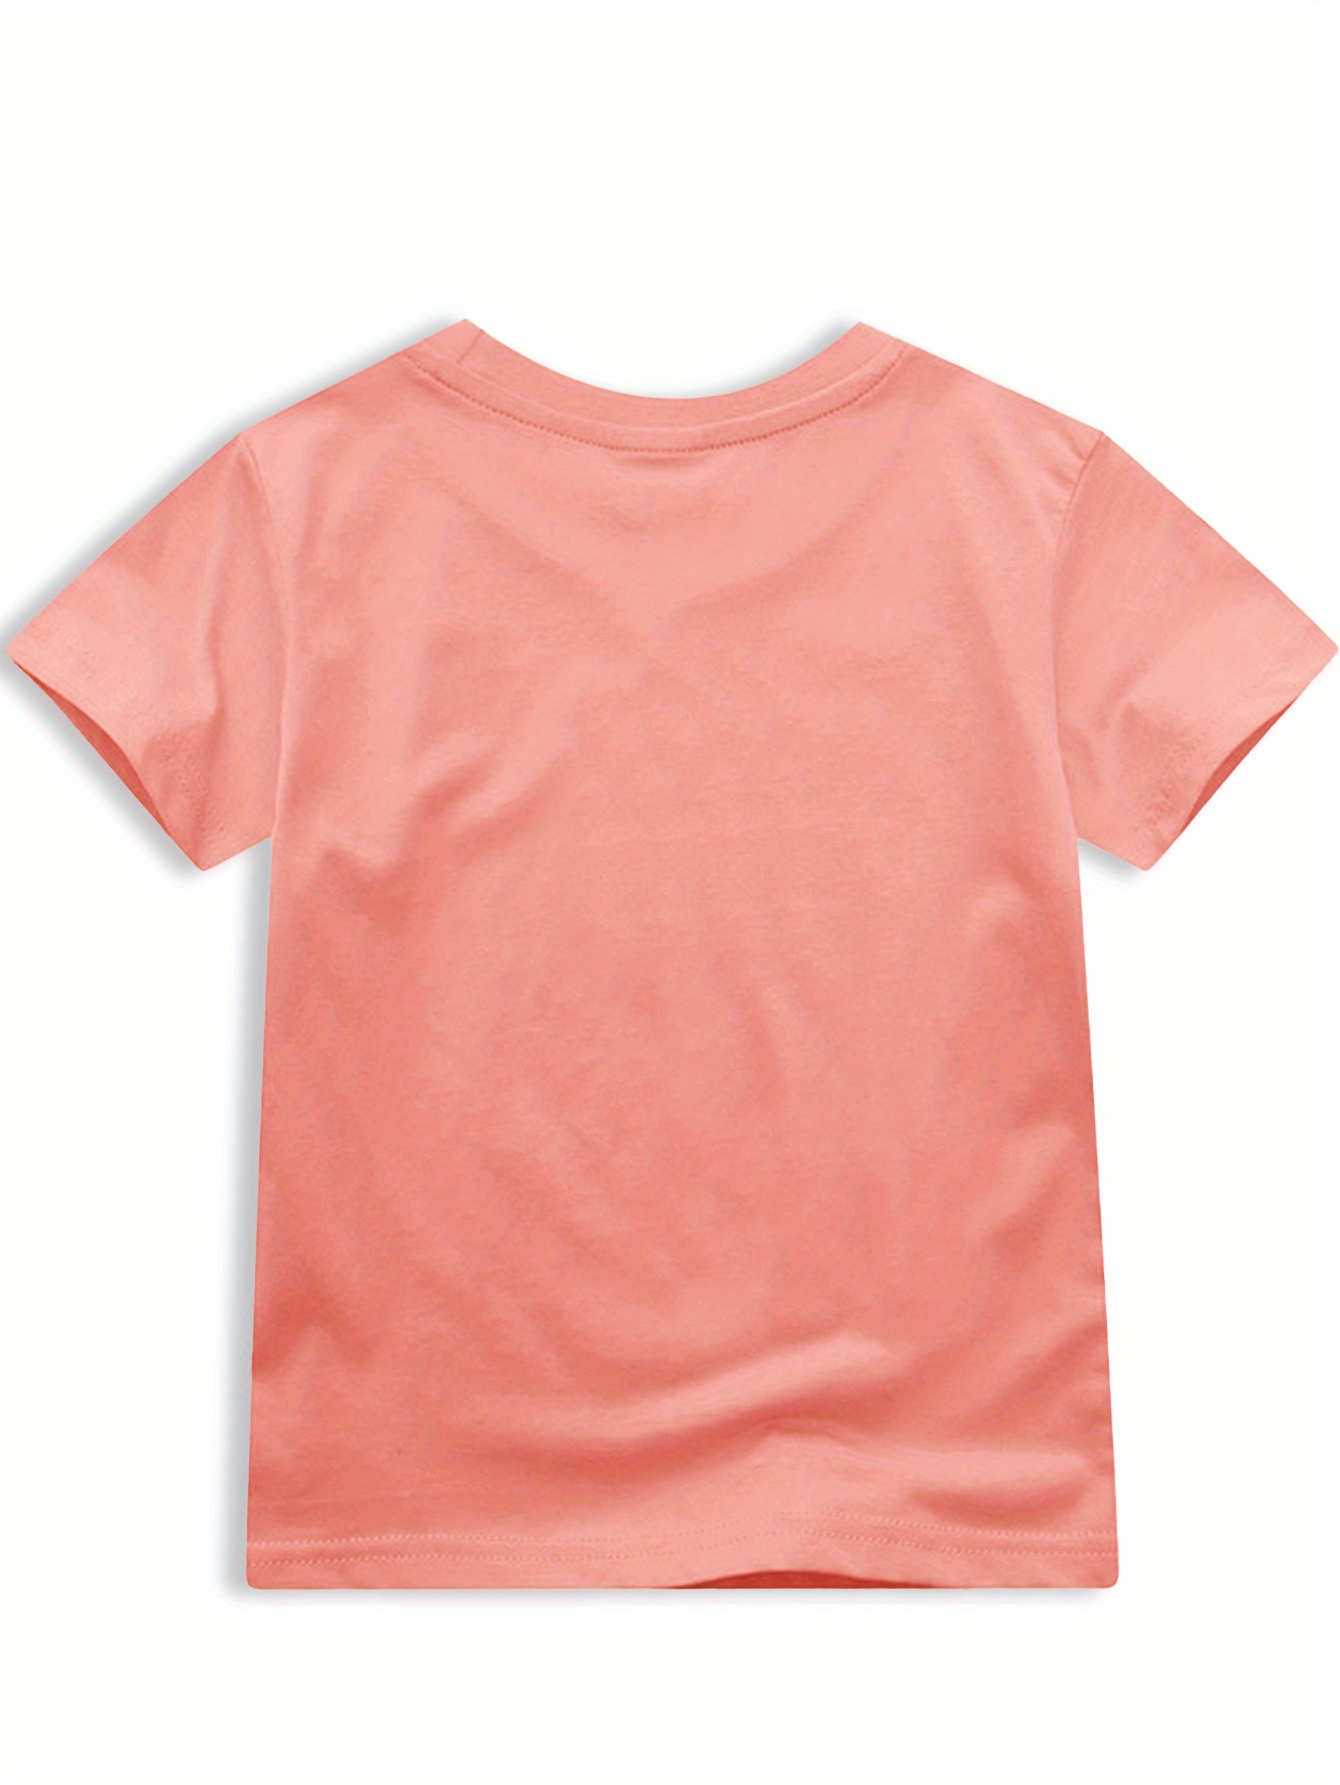 GACHA VIDA 3D Womens T Camisas Verão Menino / Meninas Moda Cute Casual T  Shirt De Manga Curta Kids Camisetas Camisetas Camisolas Roupa Dos Homens De  $175,61